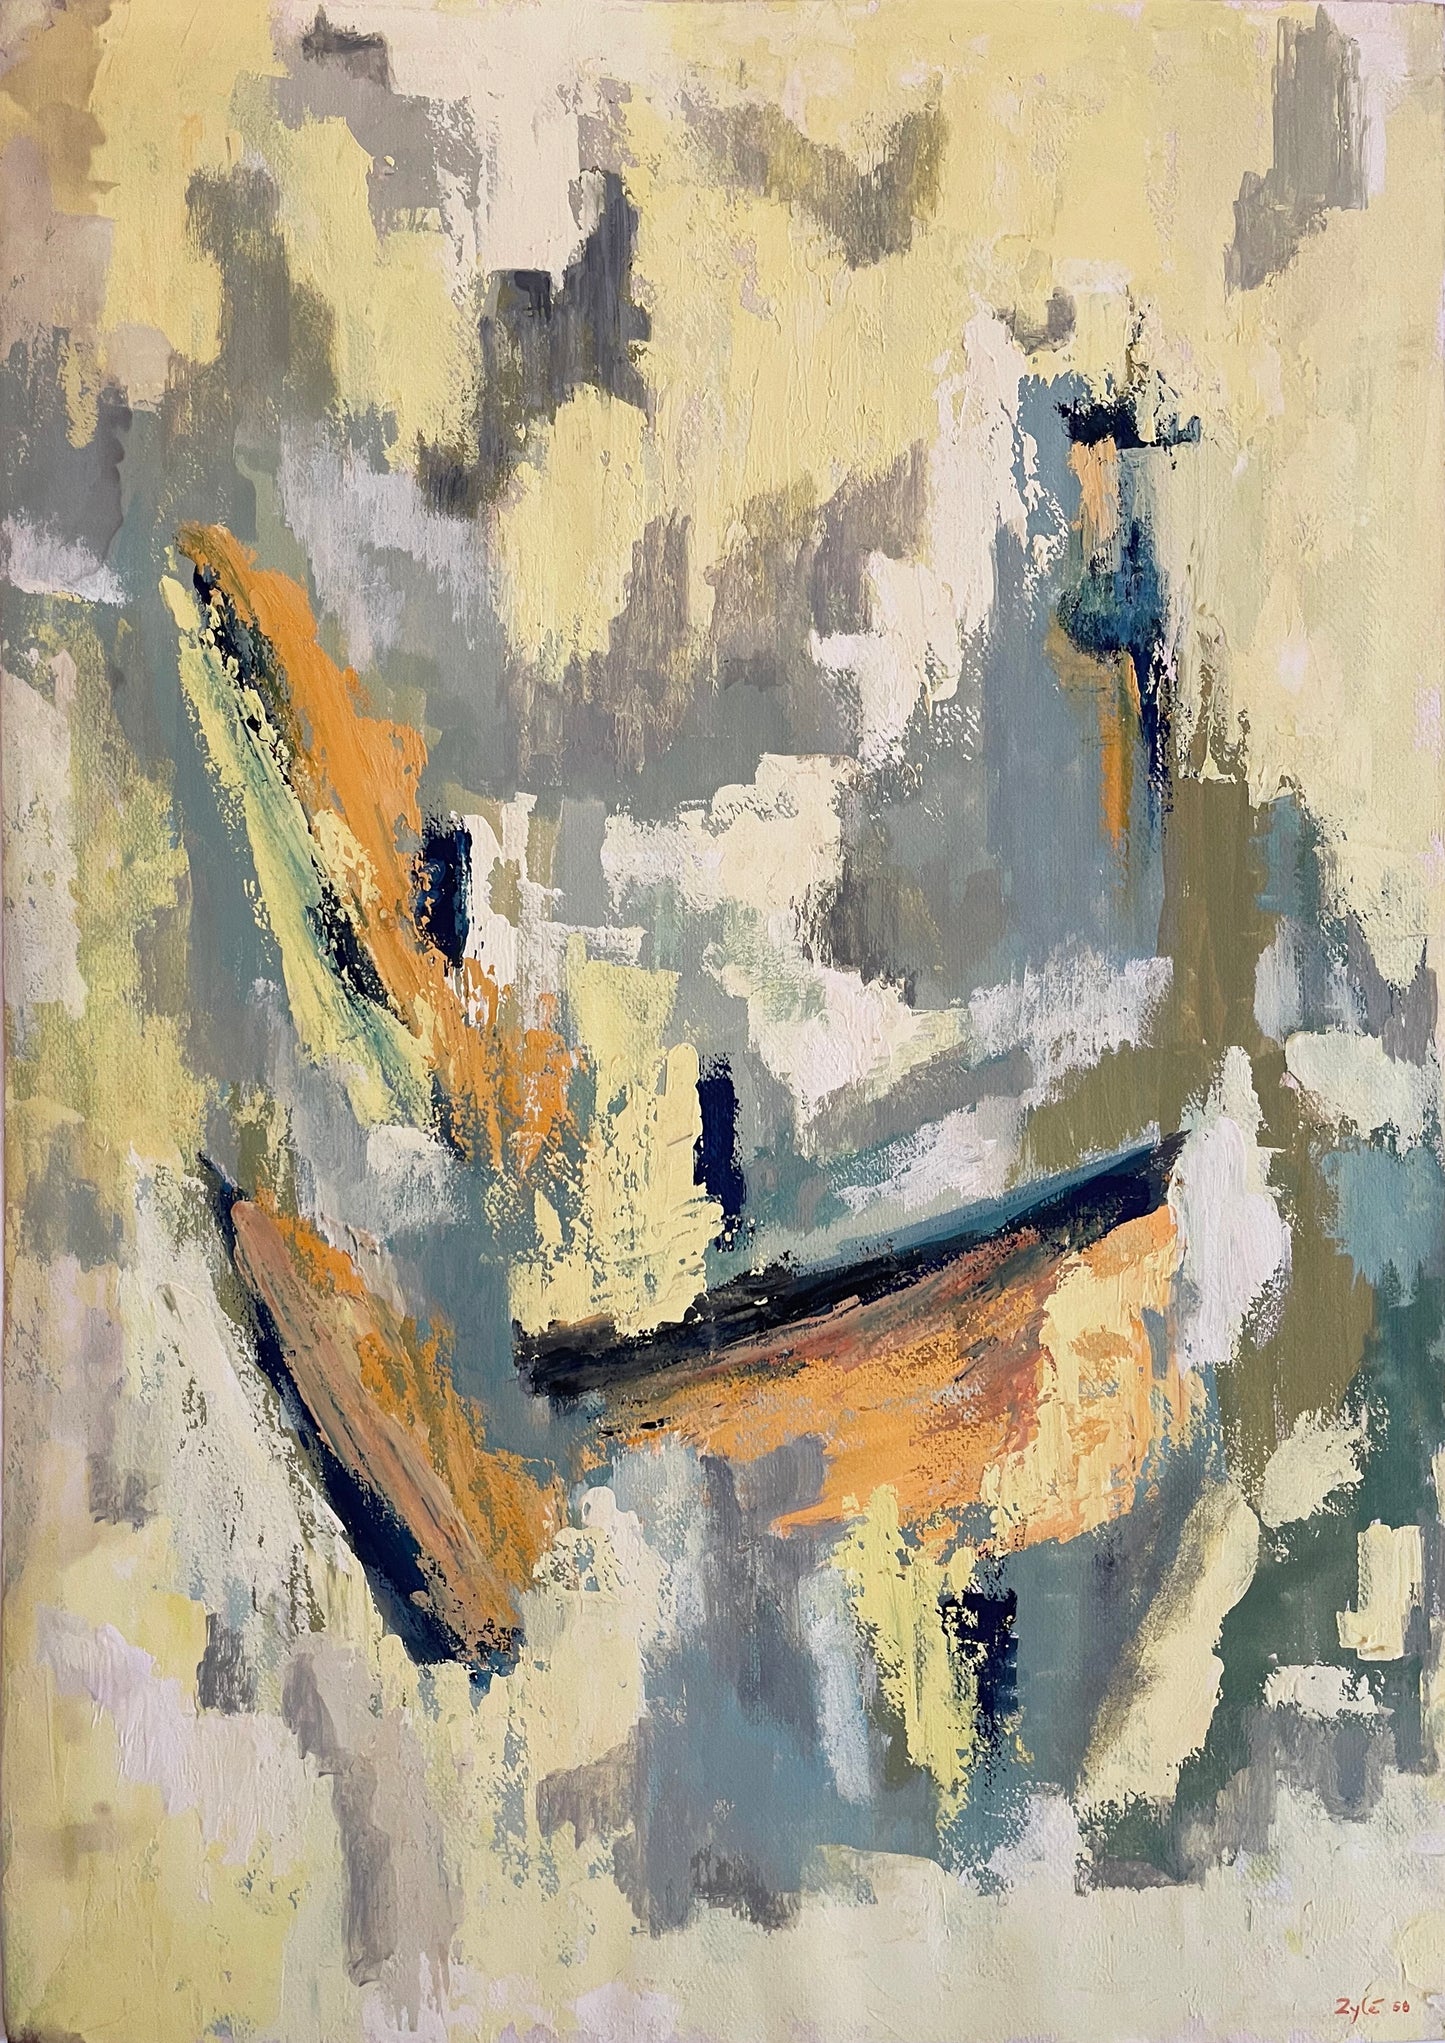 Zyle Abstract Acrylic Painting: "Seashore", 1958